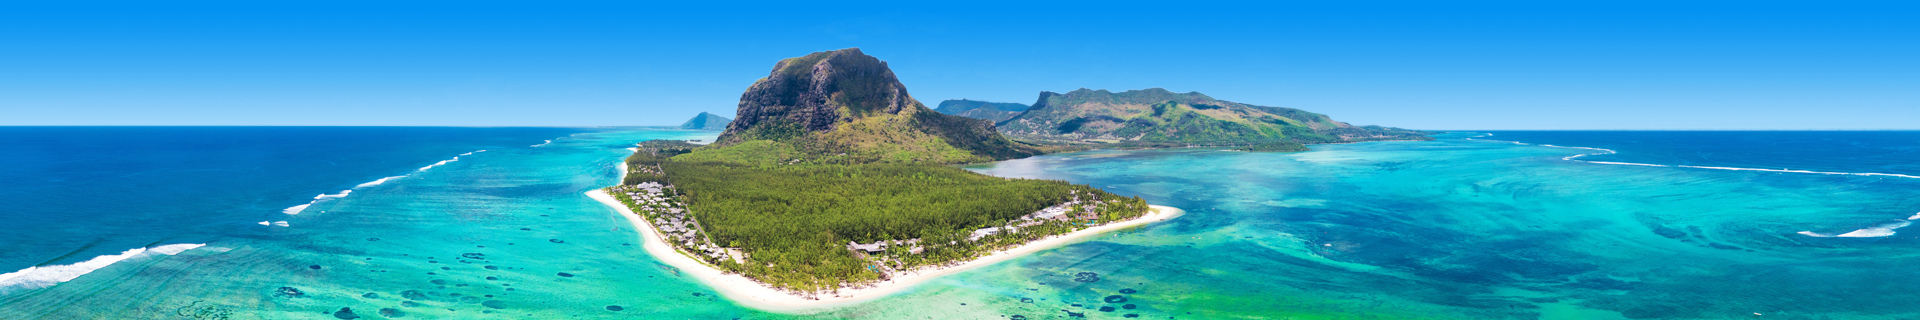 kan ik op vakantie naar Mauritius?